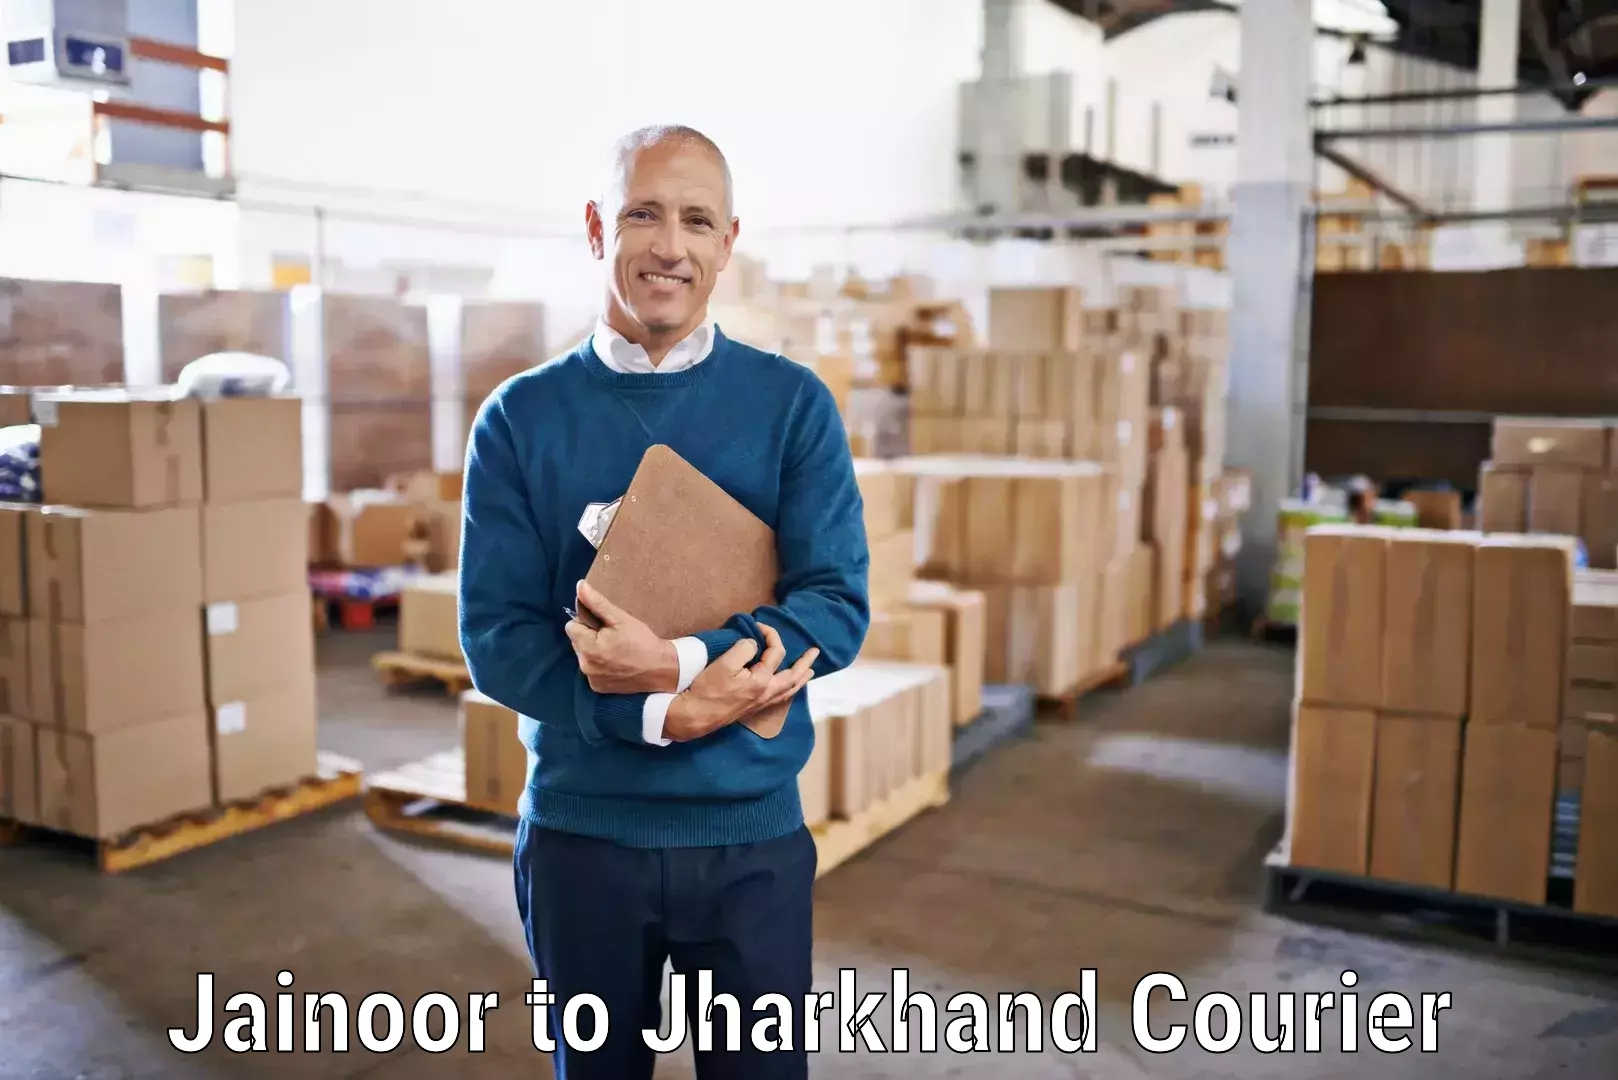 On-demand shipping options Jainoor to Bokaro